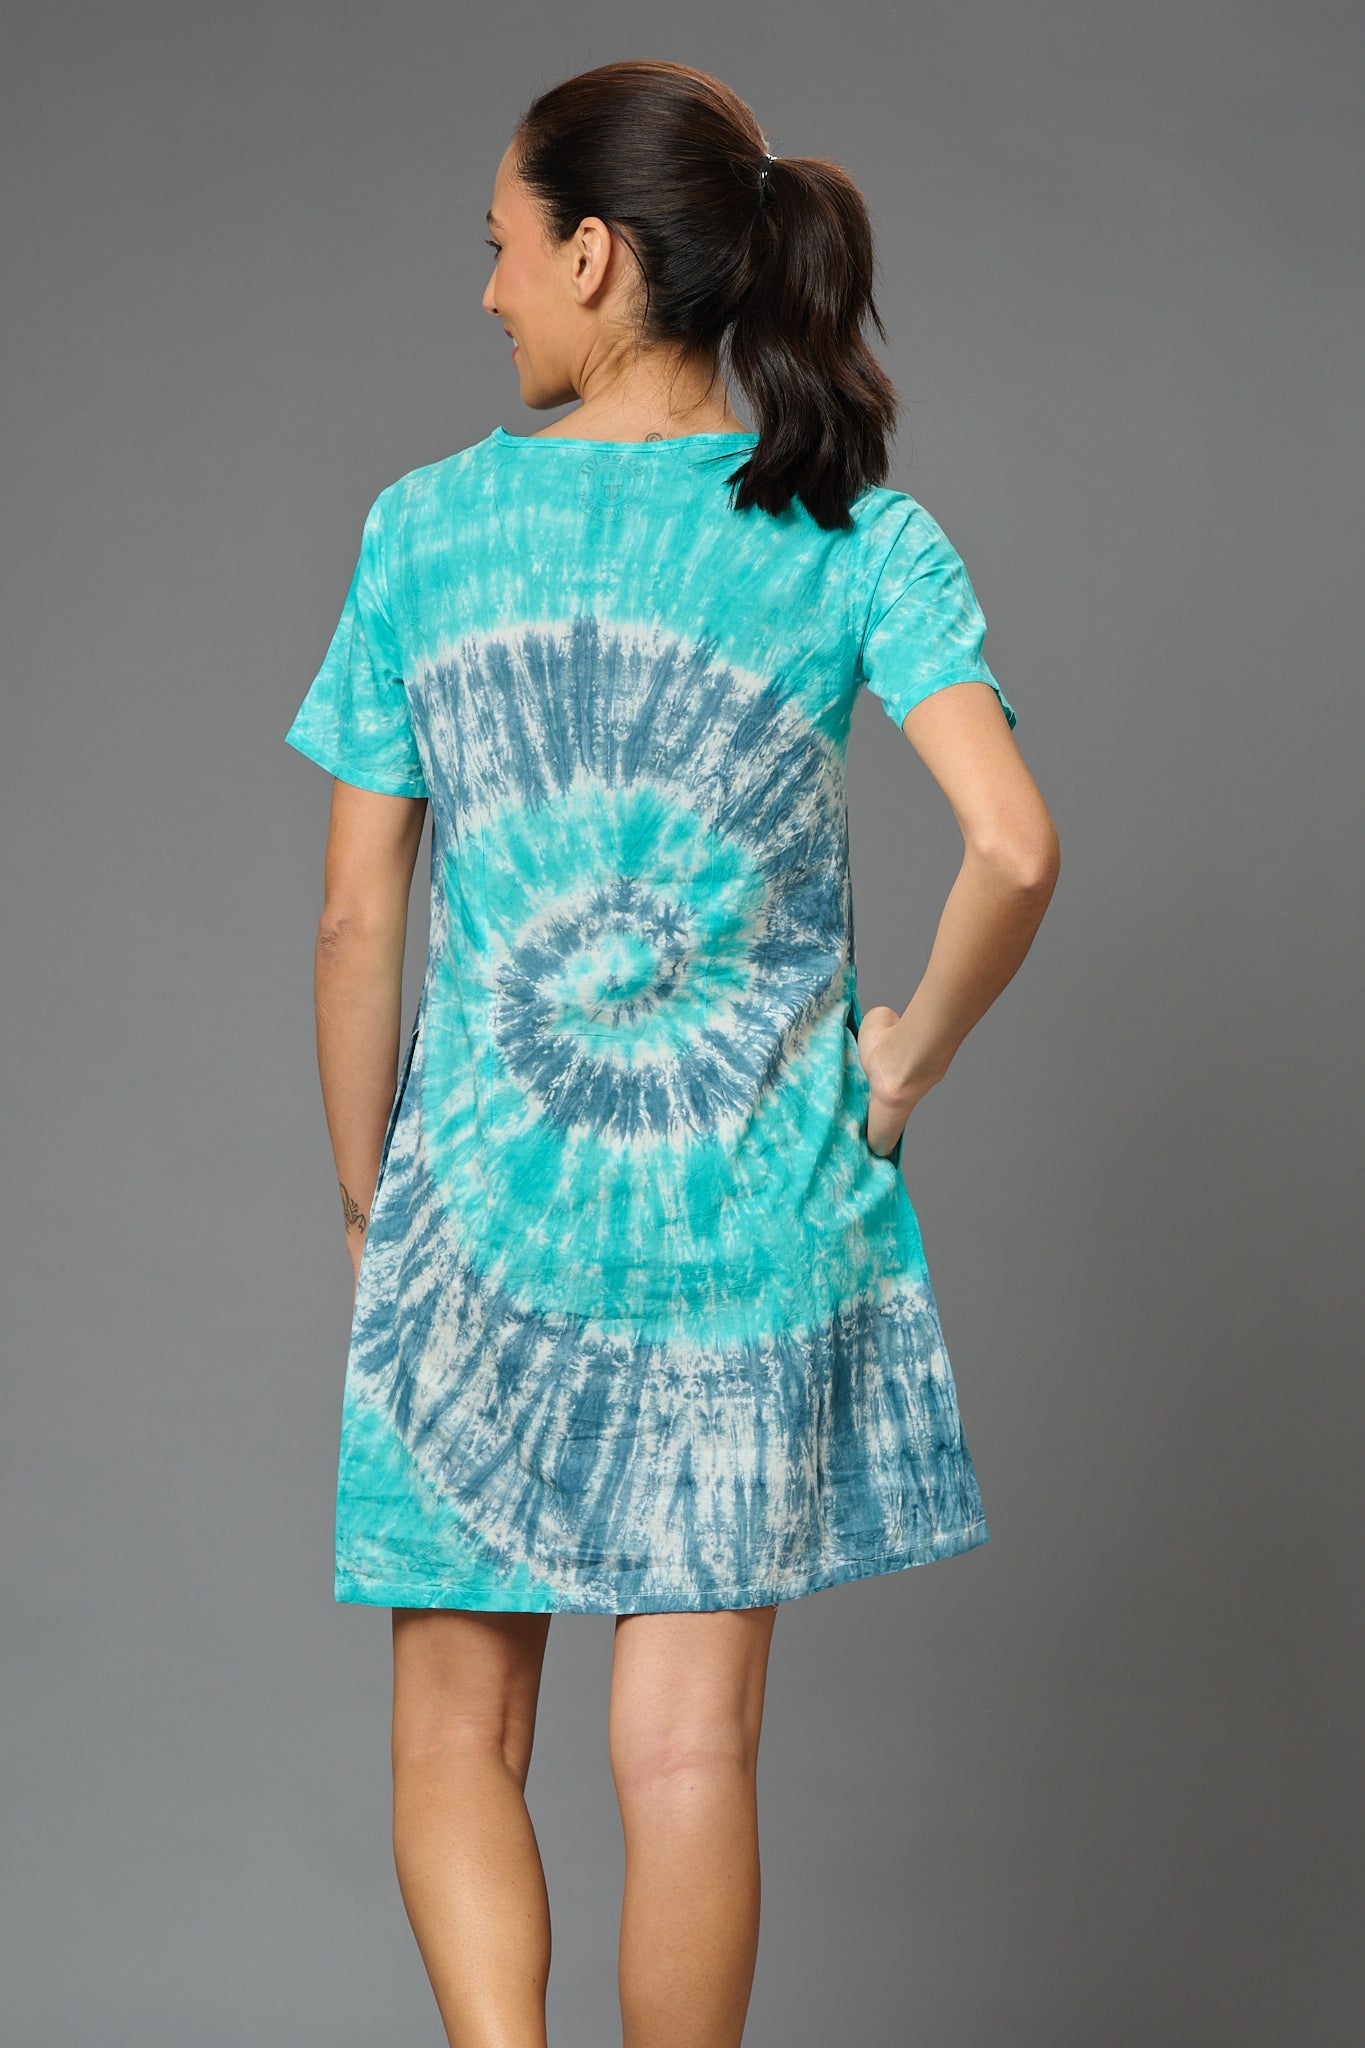 Spiral Design Dress for Women - Go Devil